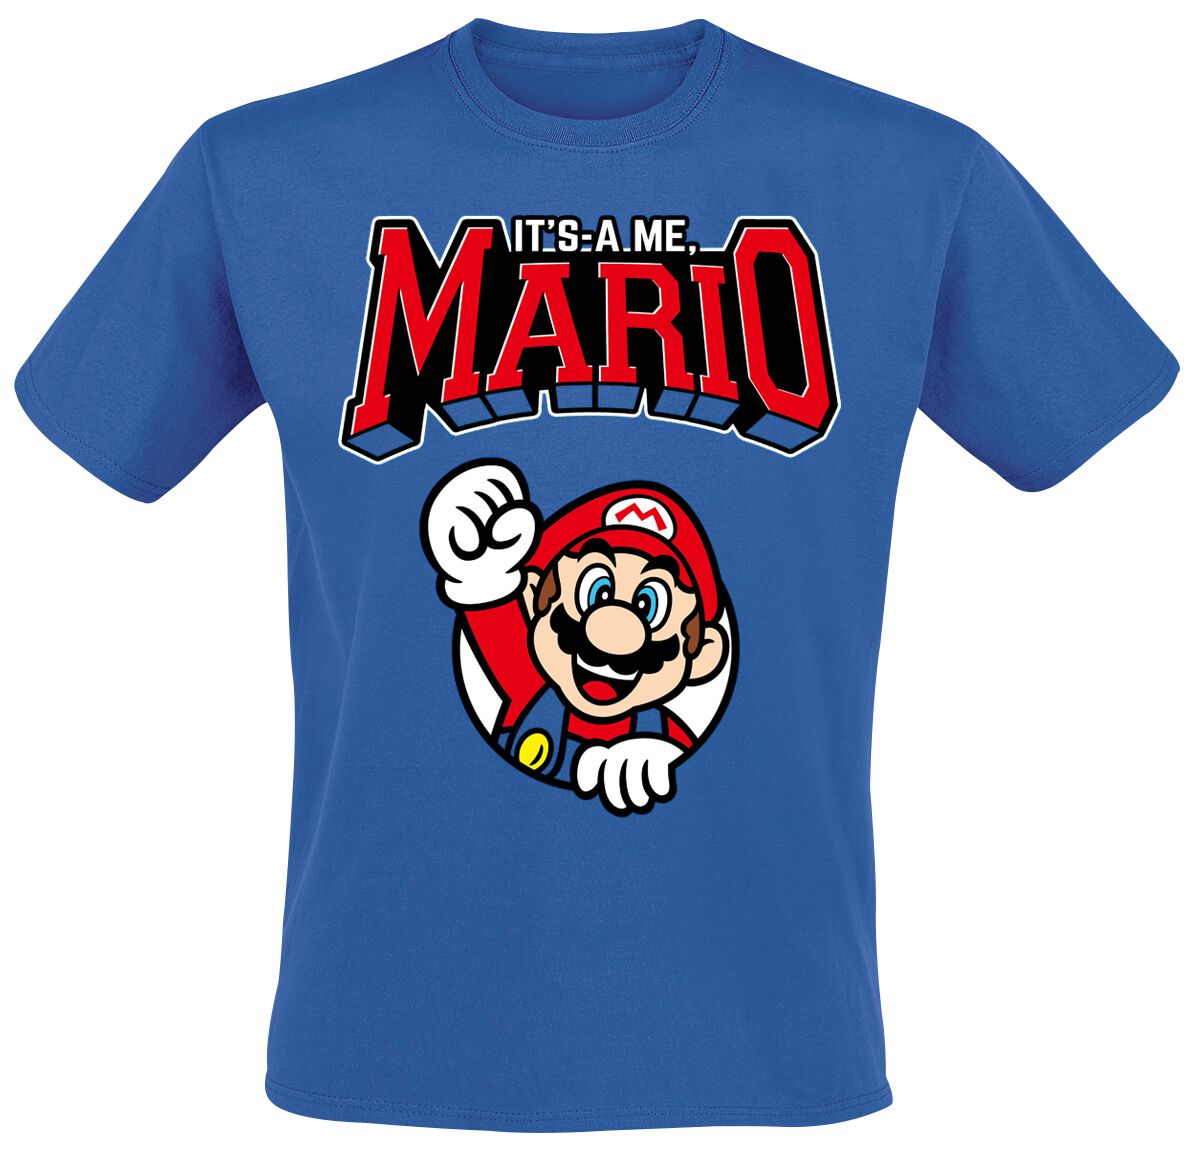 Super Mario Varsity T-Shirt blau in S